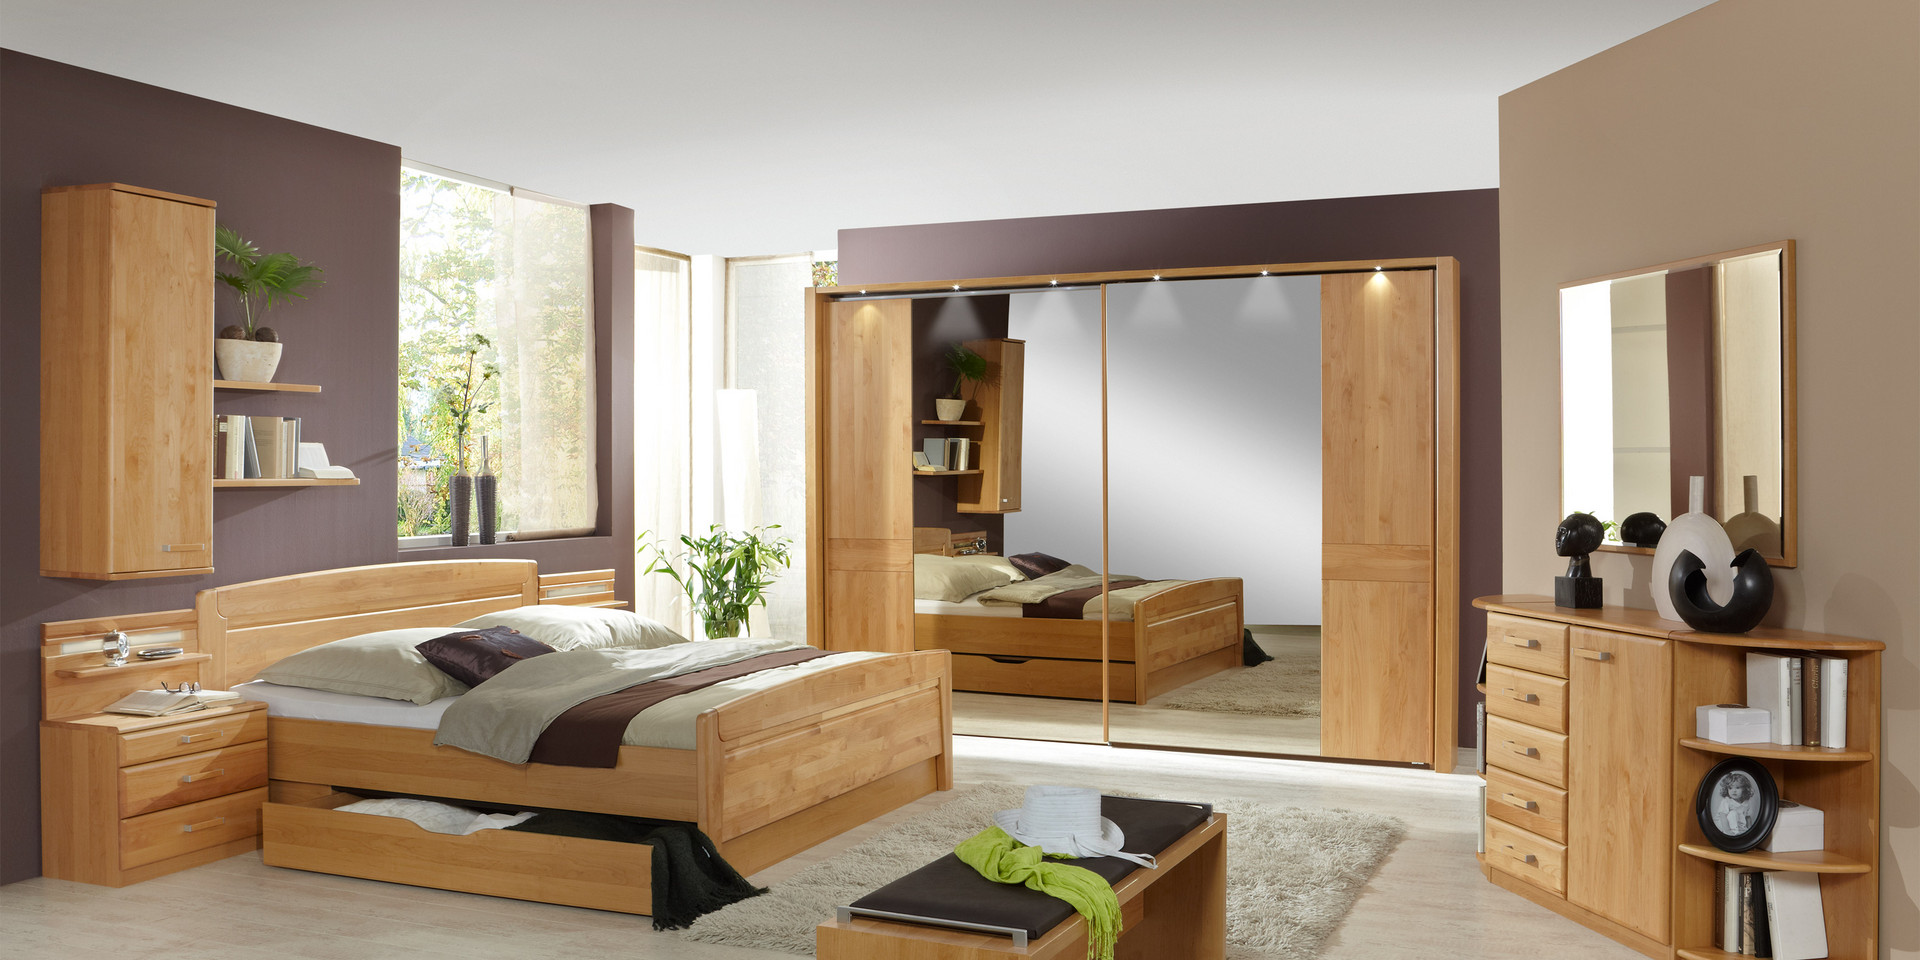 Schlafzimmer klassisch Lausanne Erle teilmassiv parsol bronze Spiegel